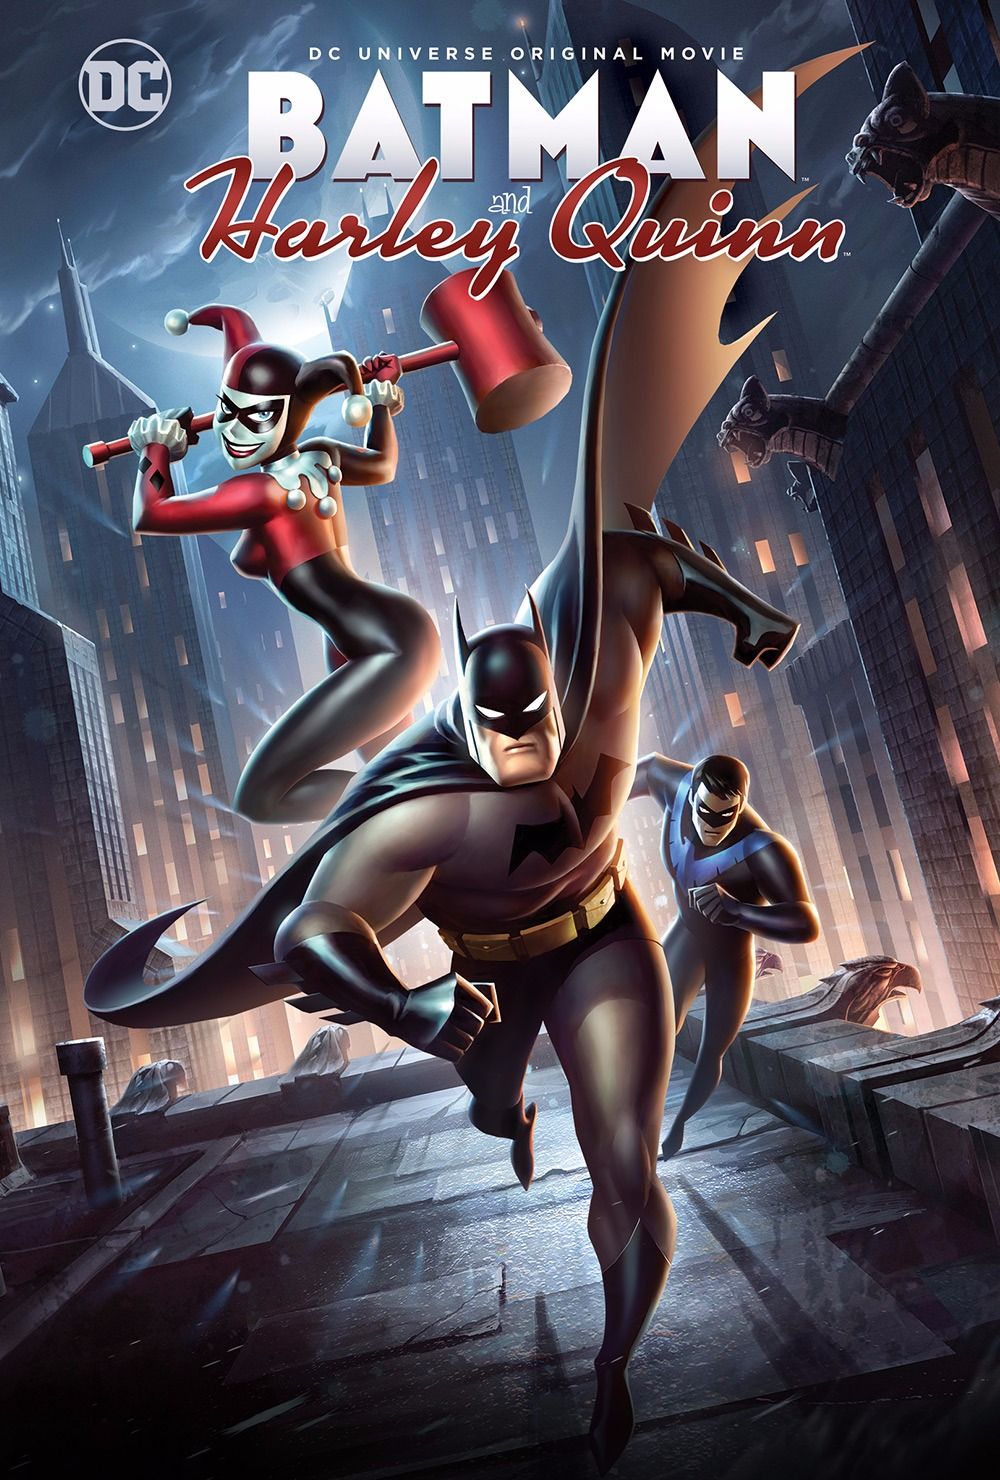 ดูหนังออนไลน์HD Batman and Harley Quinn (2017) แบทแมน ปะทะ วายร้ายสาว ฮาร์ลี่ ควินน์ หนังเต็มเรื่อง หนังมาสเตอร์ ดูหนังHD ดูหนังออนไลน์ ดูหนังใหม่